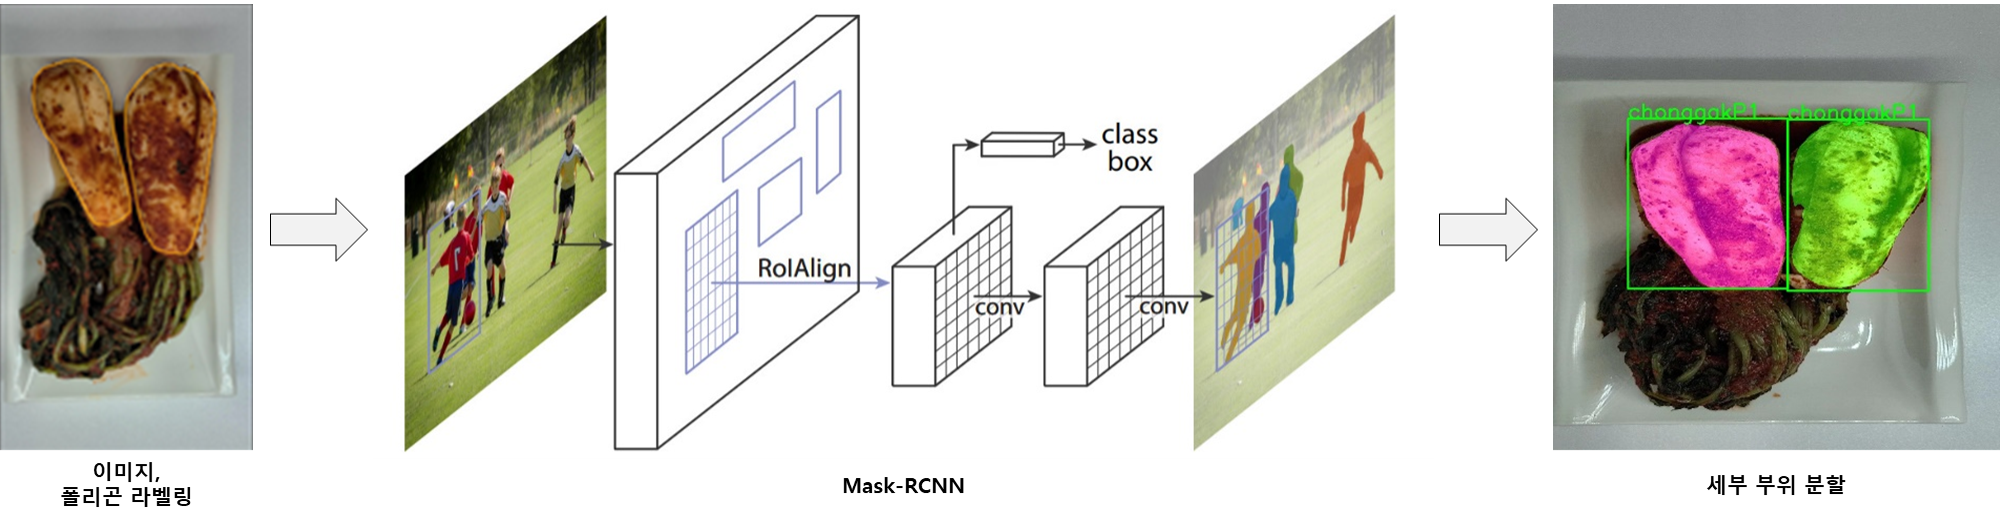 Mask-RCNN 기반 세그멘테이션 모델 학습 과정 예시